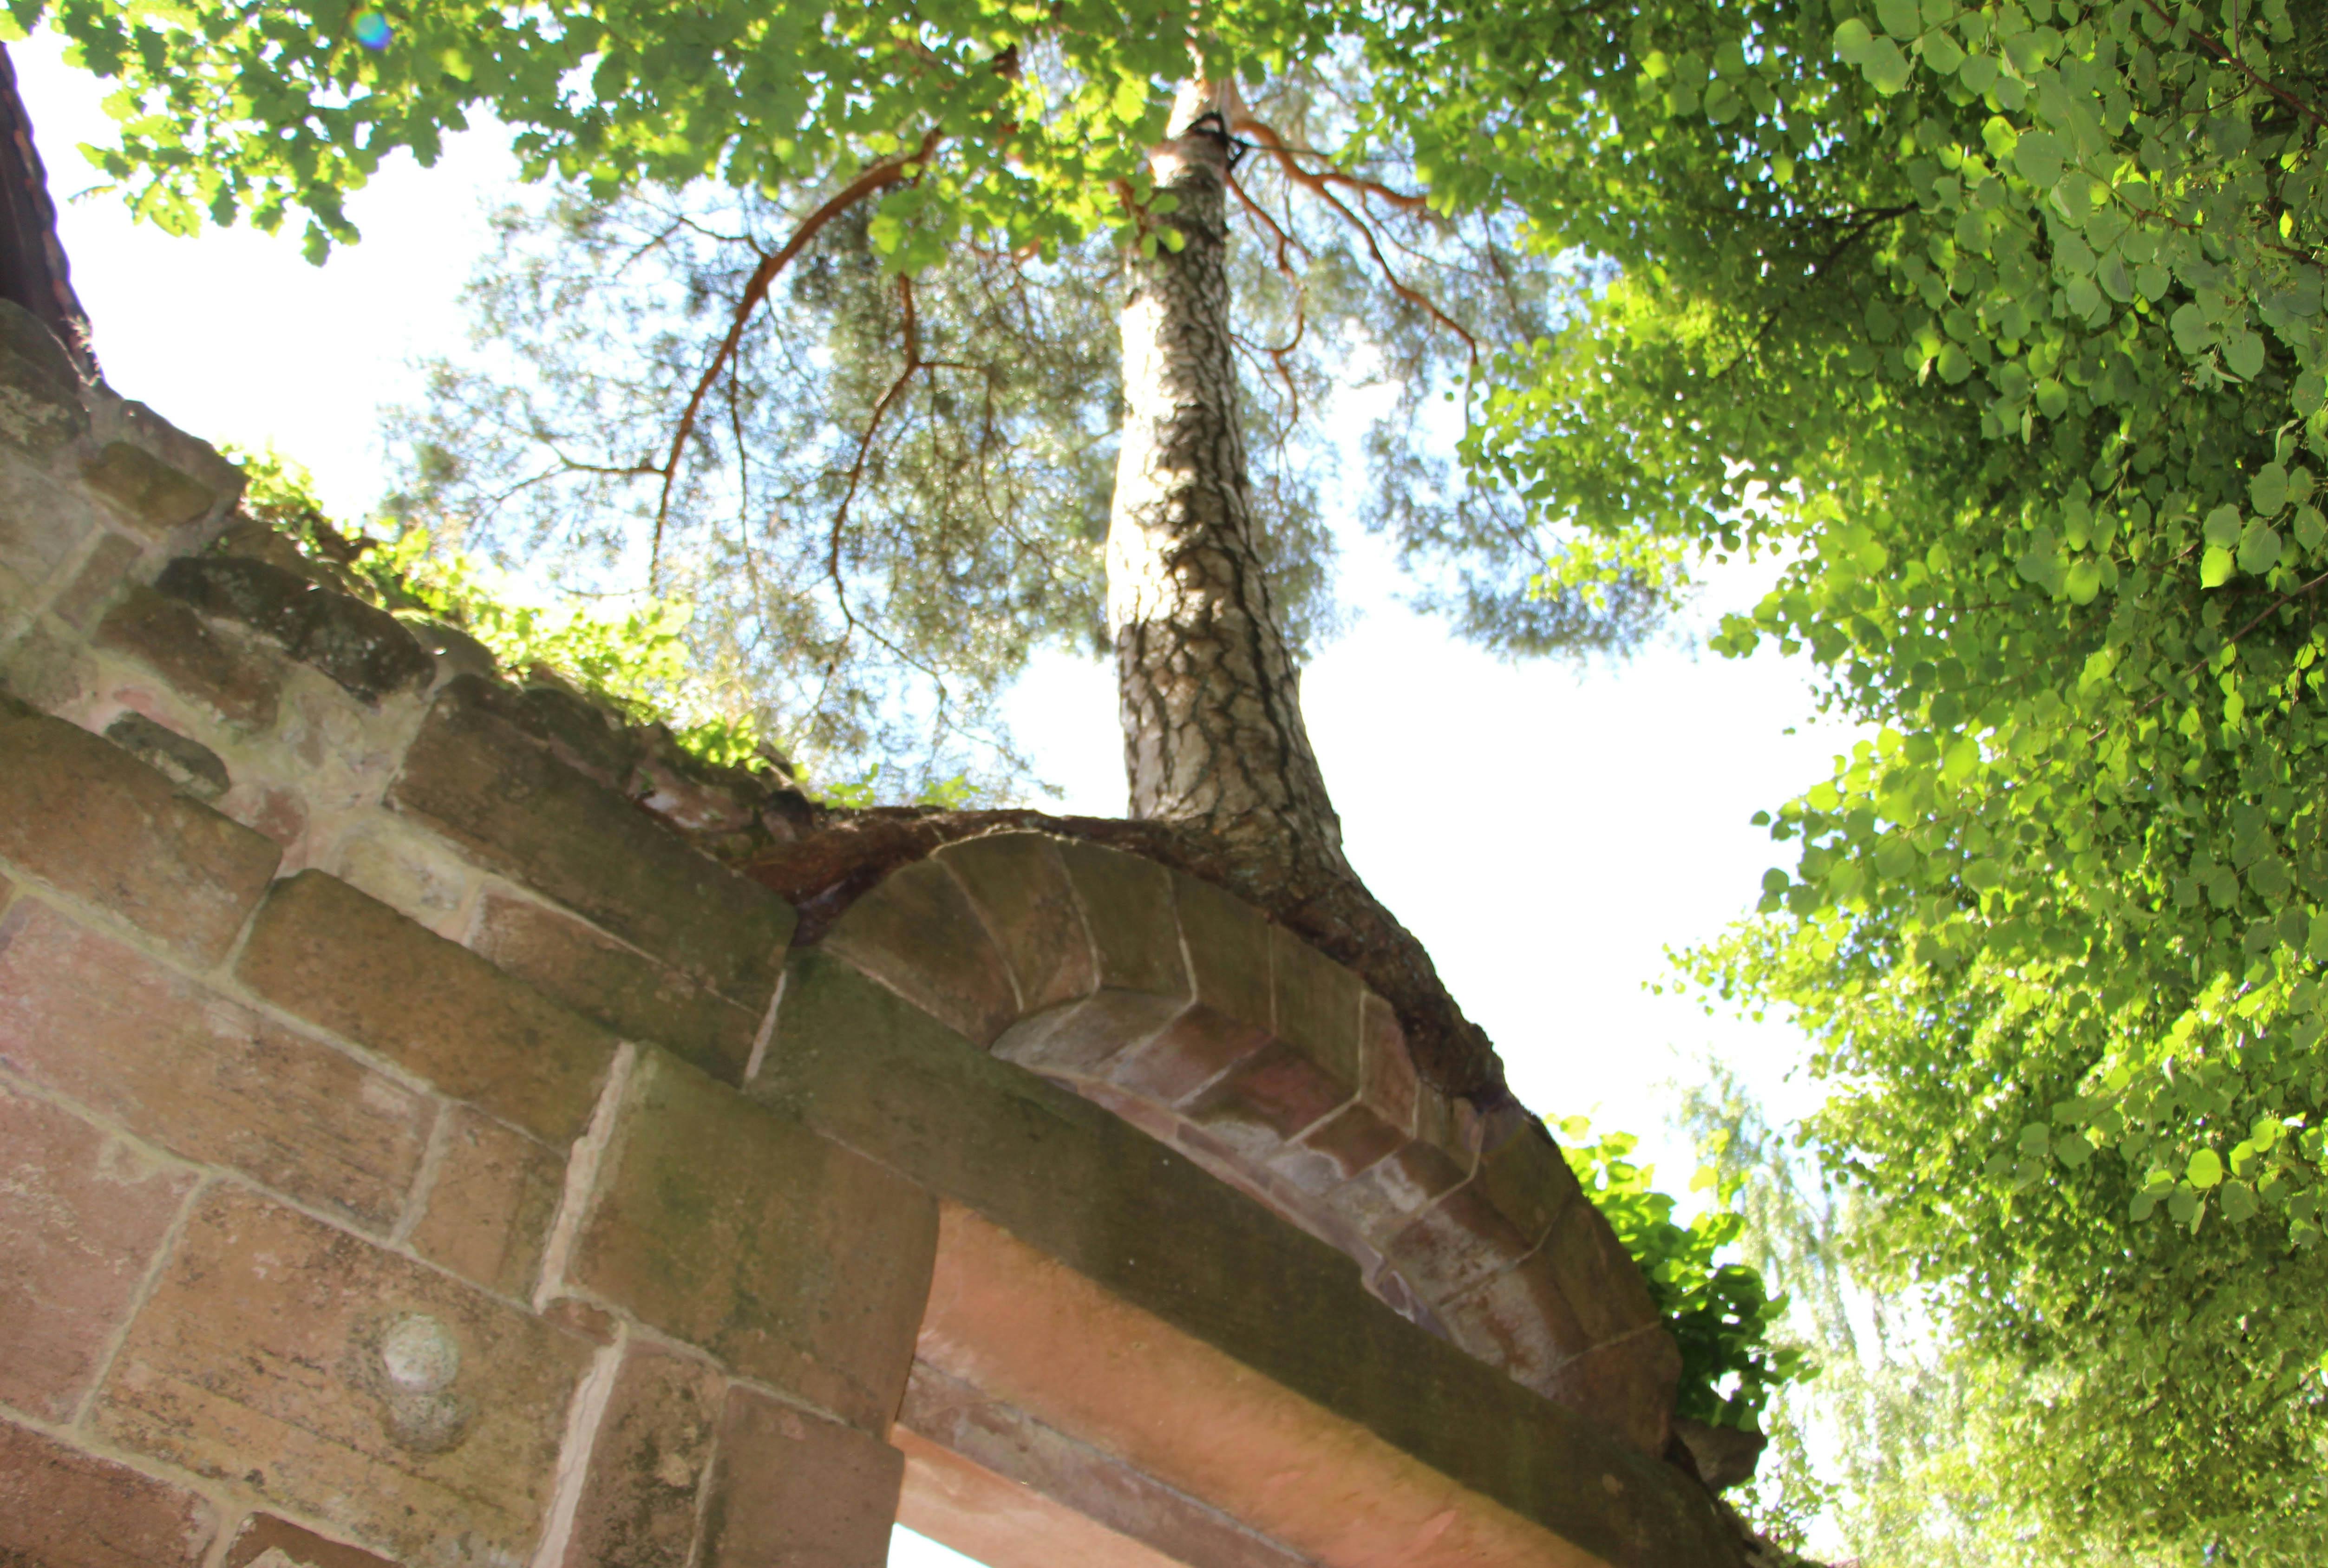 Am 28. April nimmt Baumexperte Reinhold Nofer seine Gäste mit in die „Geheimnisvolle Welt der Bäume“. Dabei lernen die Teilnehmer auch die Wunderkiefer im Klosterviertel kennen.